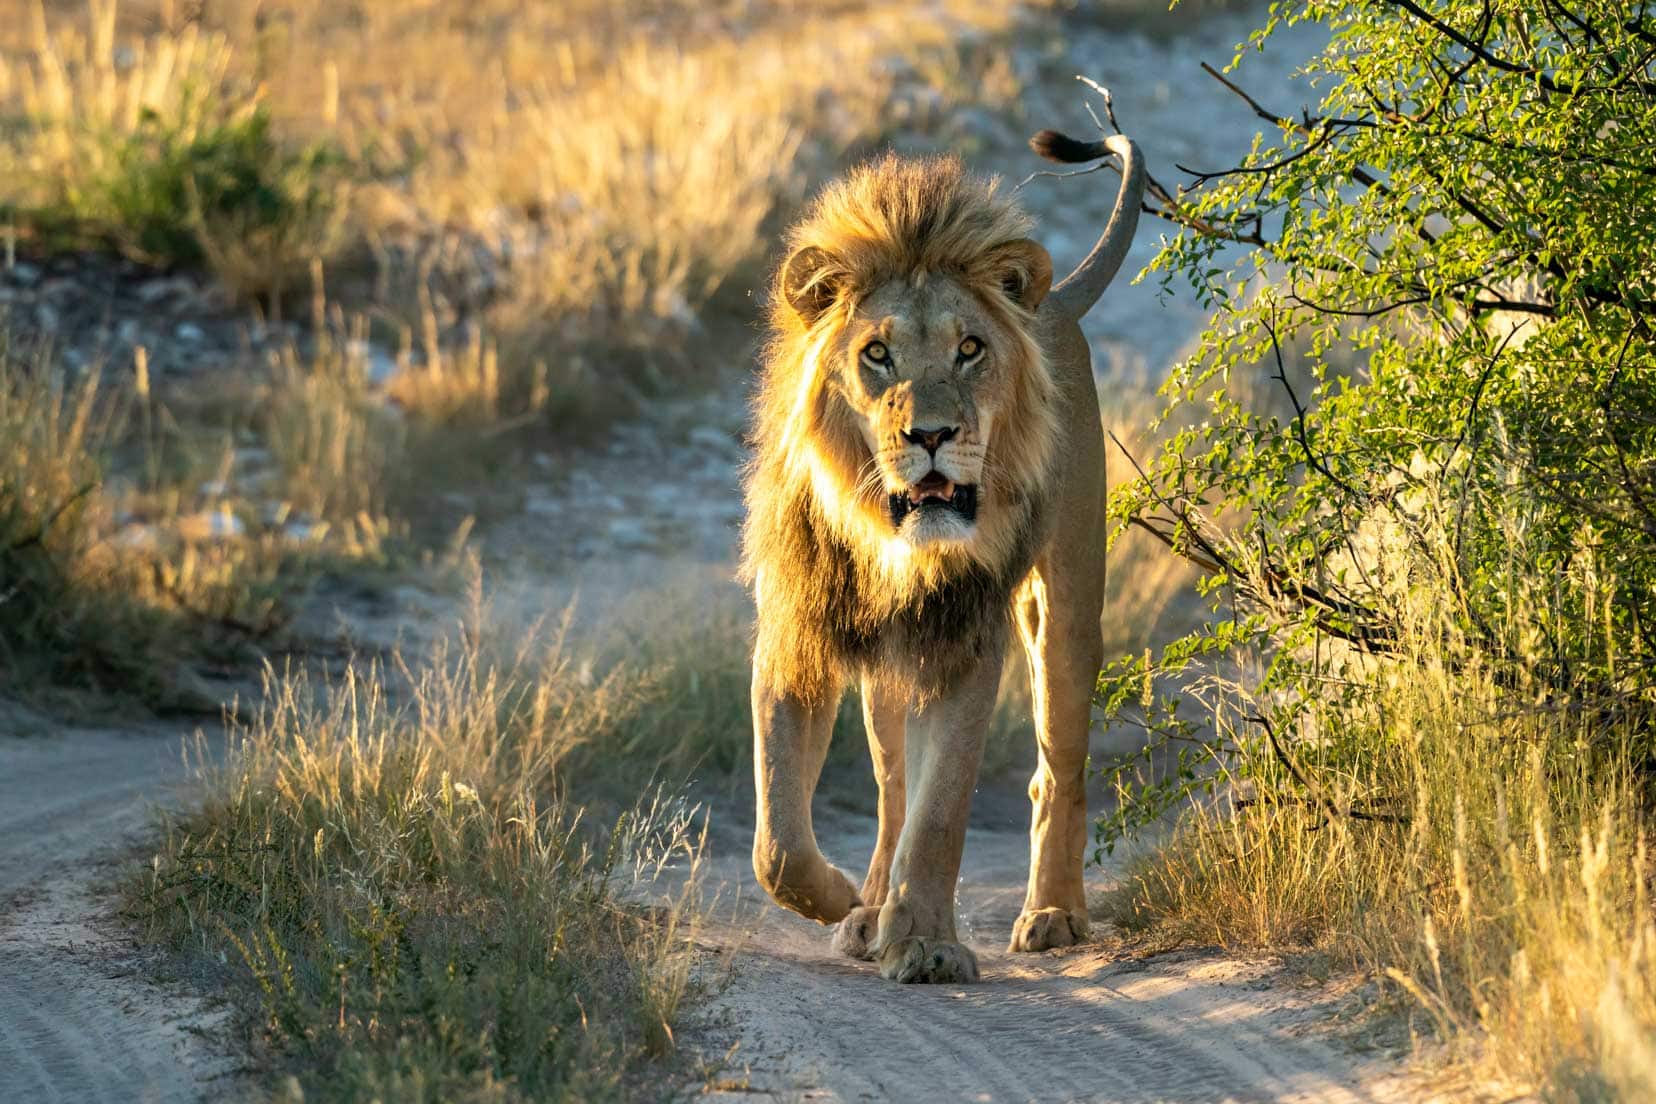 lion-in-sunglight-walking-towards-us-on-road